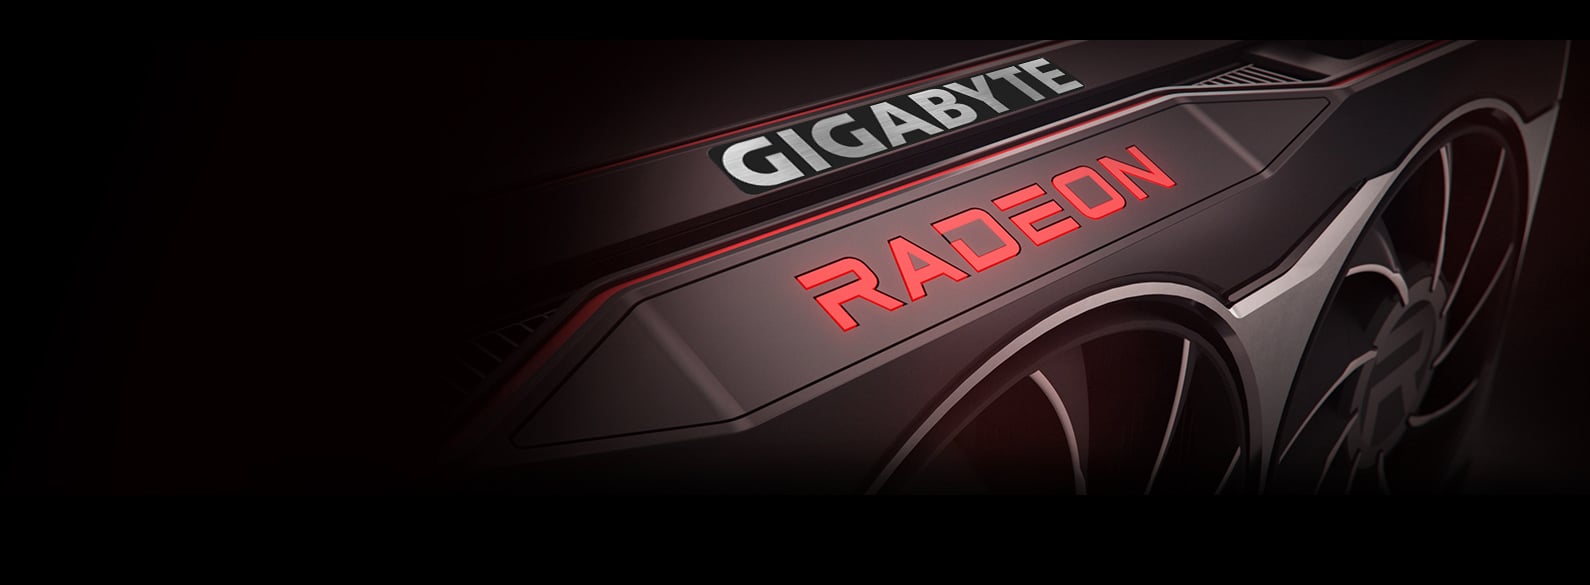 Gigabyte Radeon RX 6800 XT GAMING OC GV-R68XTGAMING OC-16GD B&H